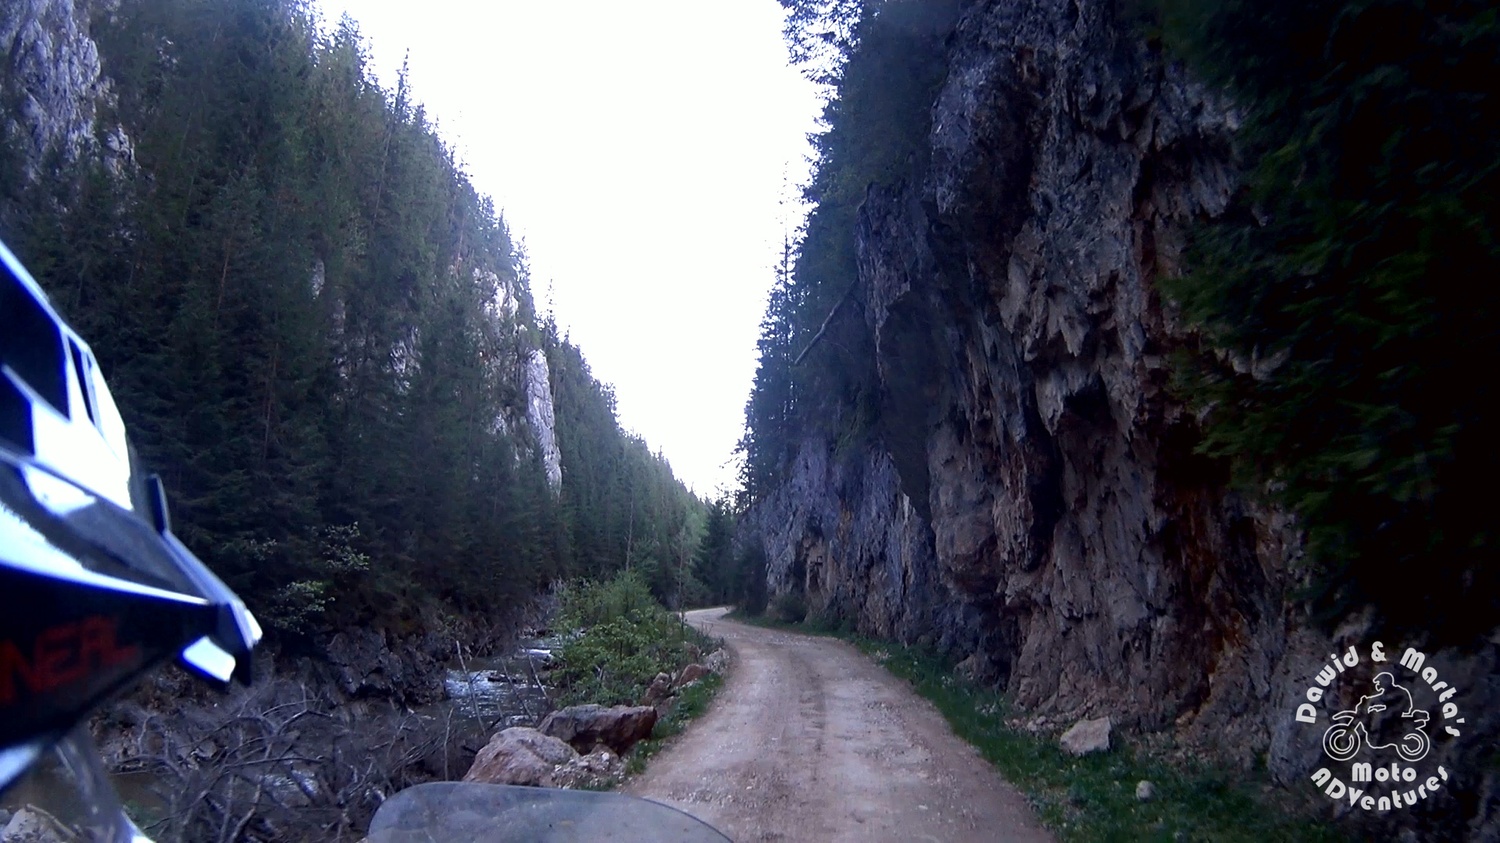 Way to Small Bicaz Gorge